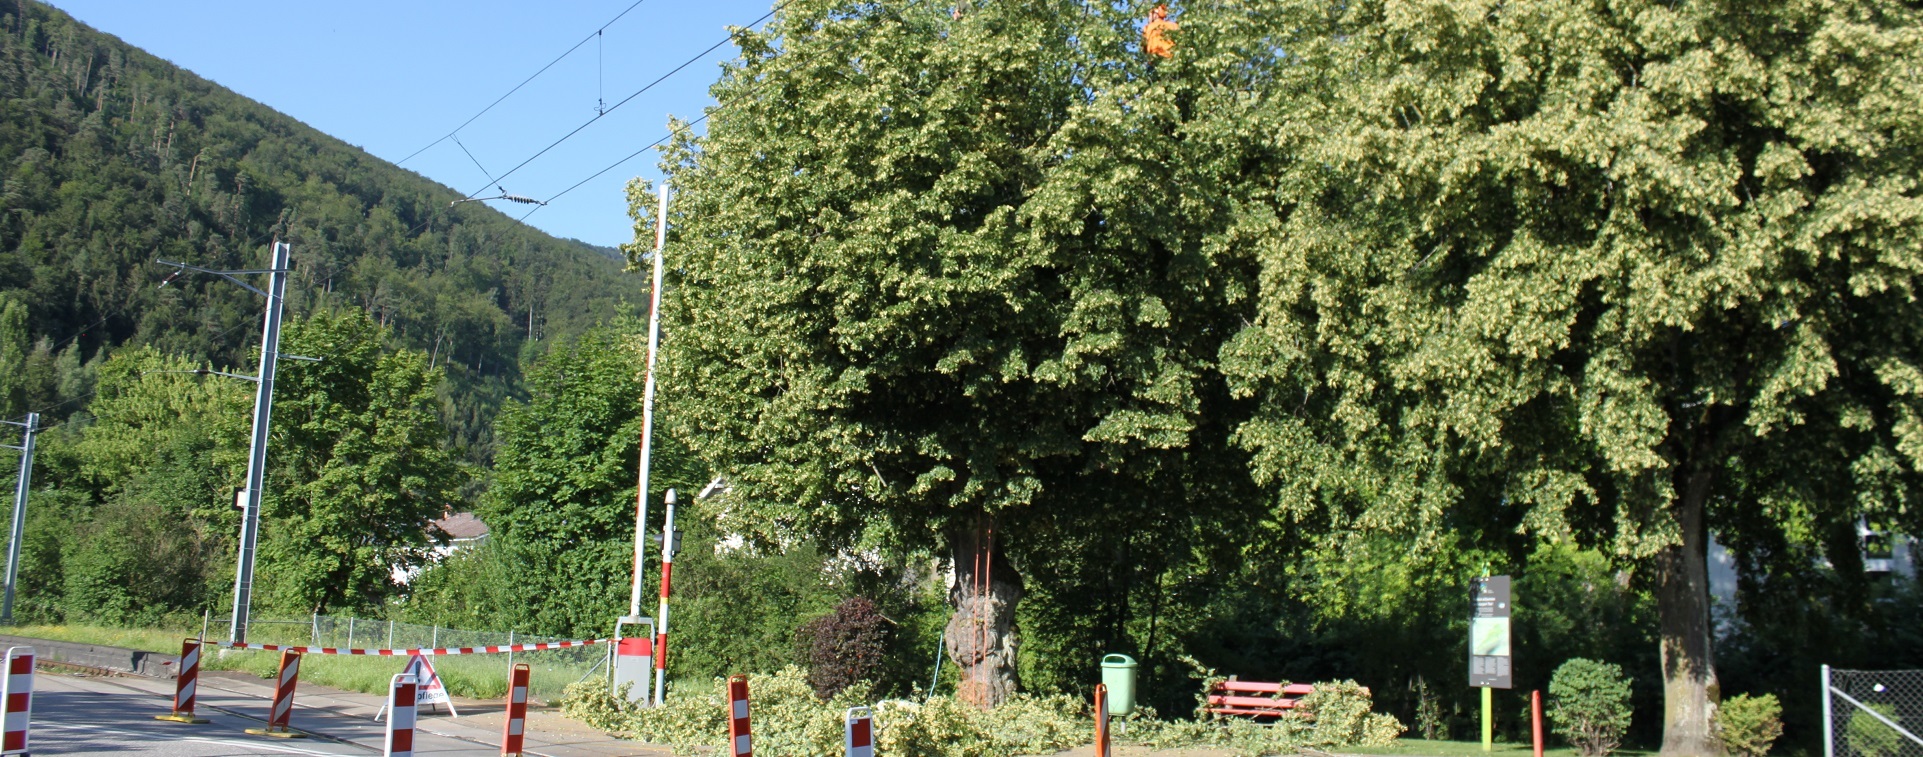 Bahnnahe Vegetation - Oensingen-Balsthal-Bahn AG